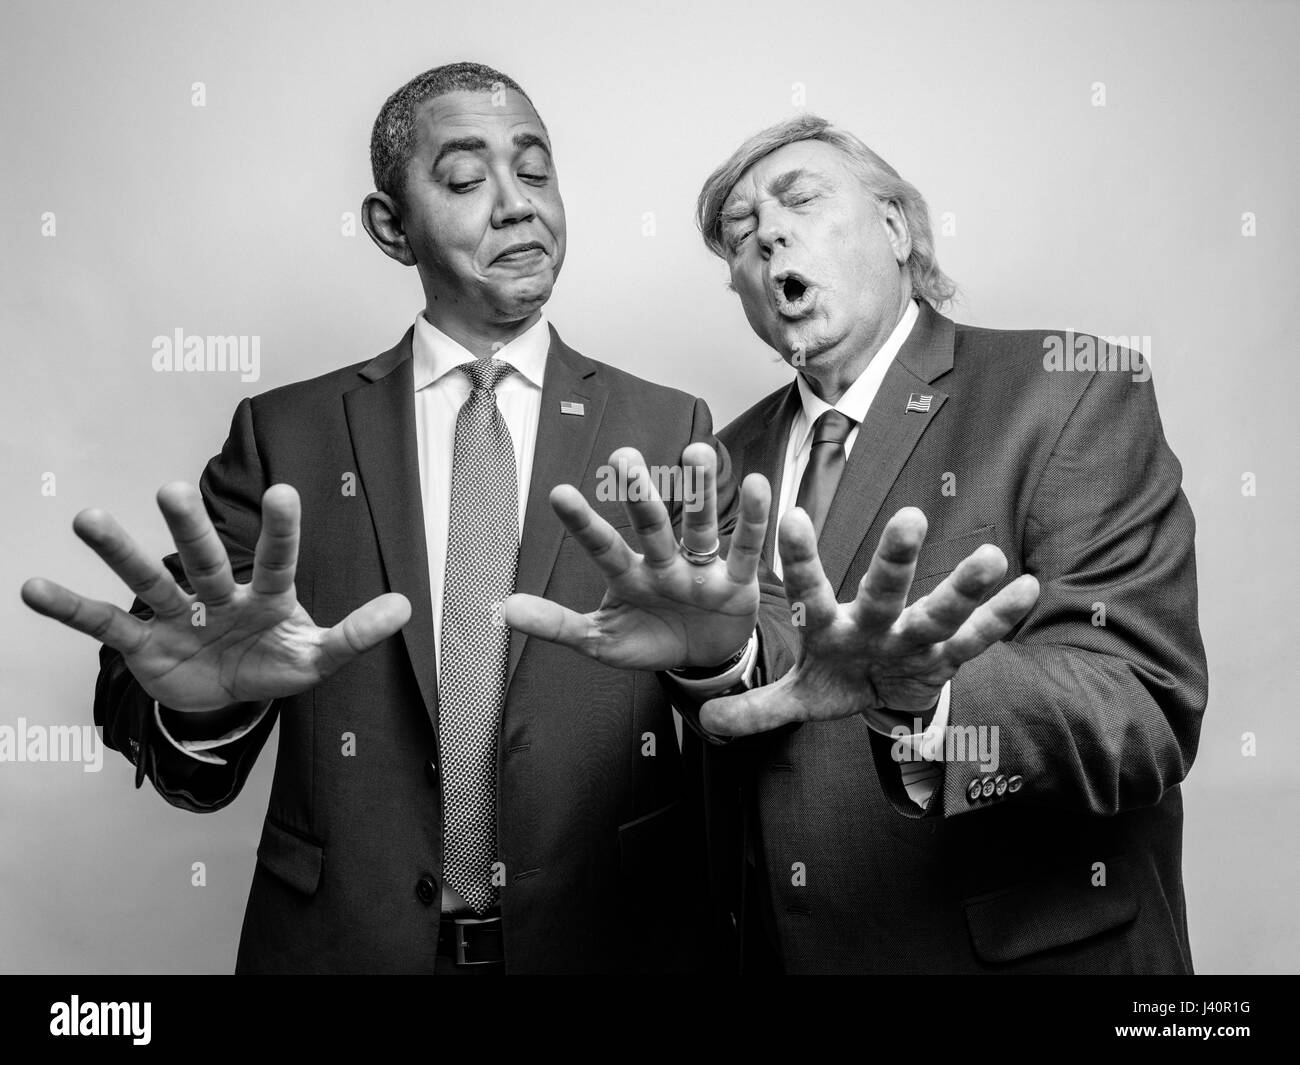 El presidente Barack Obama y el presidente Donald J. Trump lookalikes comparar los tamaños de manos para ver quién tiene la más grande de manos durante una sesión de fotos en Hong Kong. Foto de stock